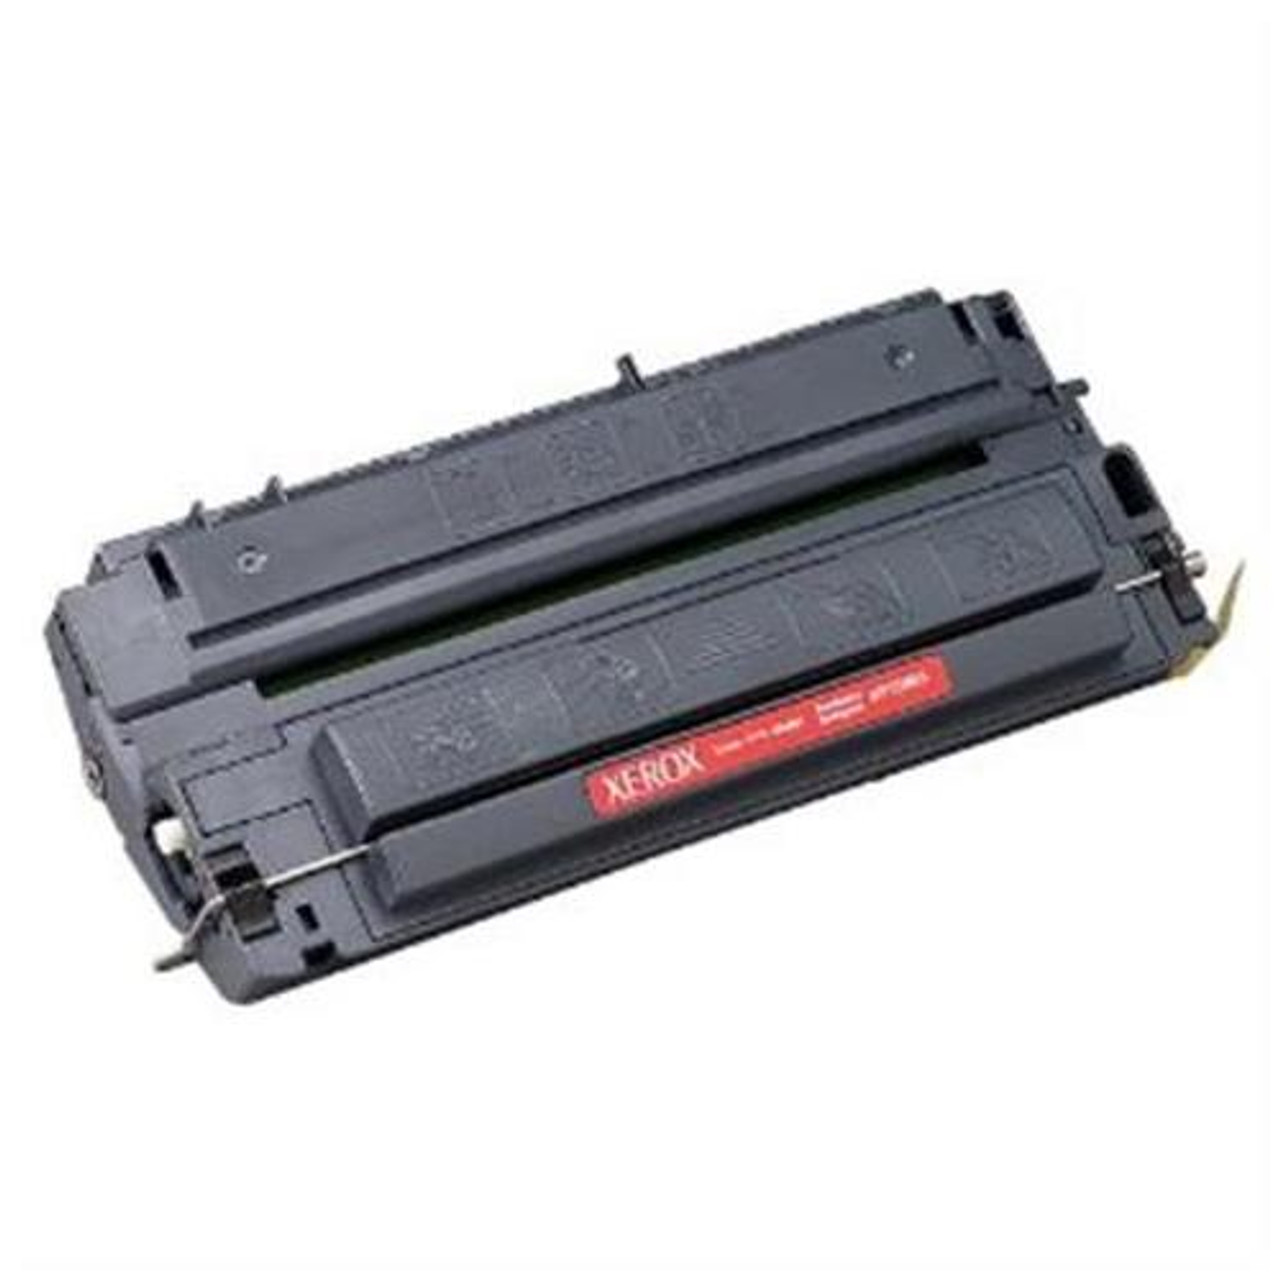 106R02182 Xerox Black Toner Cartridge for Phaser 3010